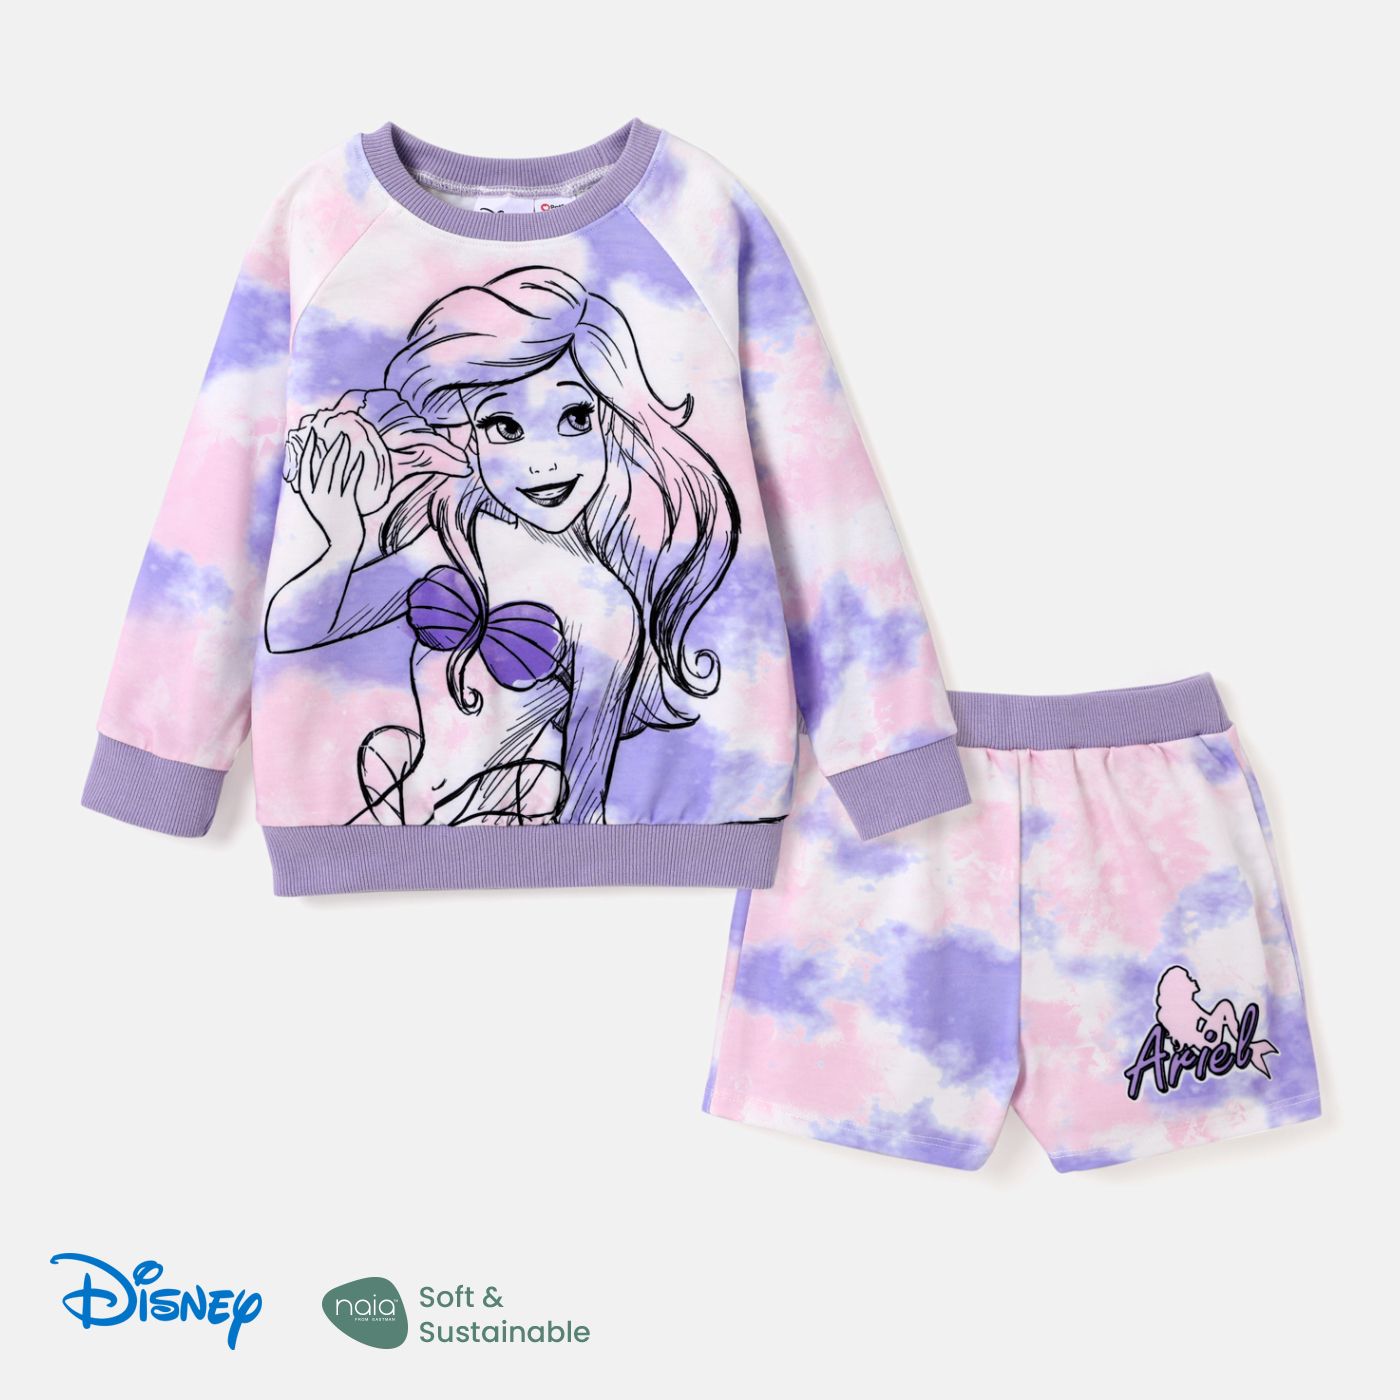 Disney Princess Toddler Girl 2pcs Naiaâ¢ Character Print Tie Dye Pullover And Shorts Set